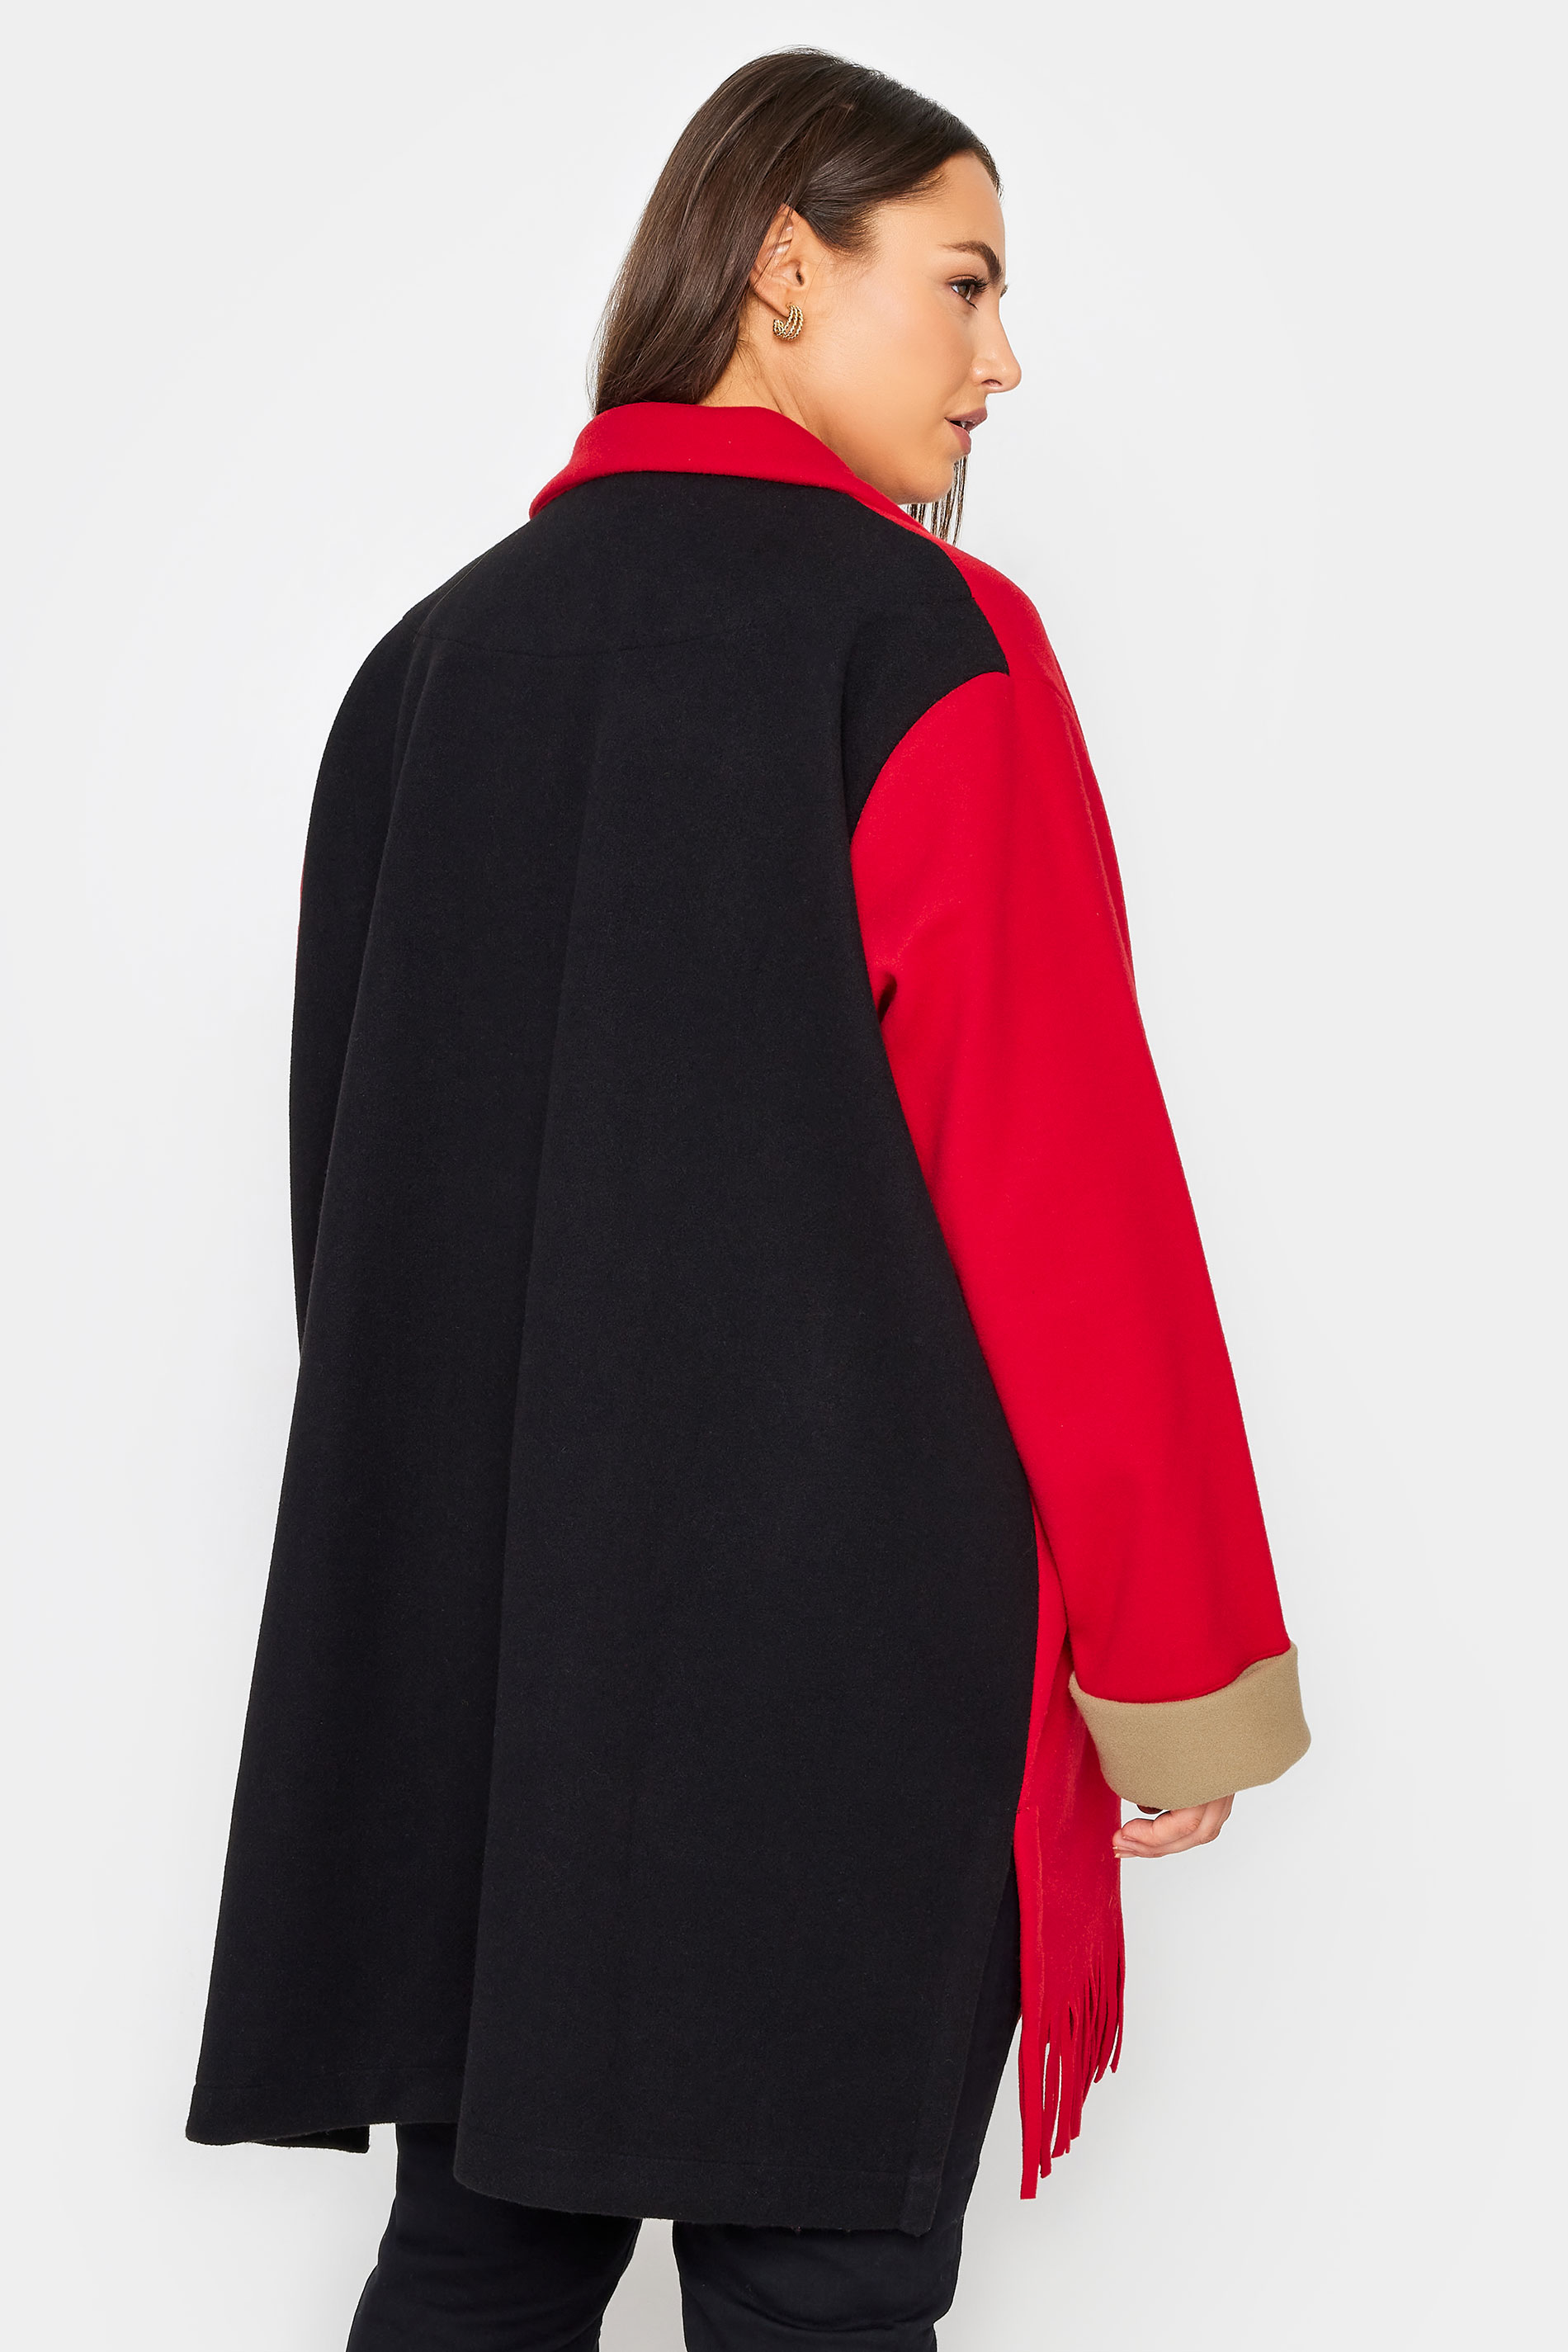 Evans Baptiste Red & Black Oversized Fringe Jacket 3